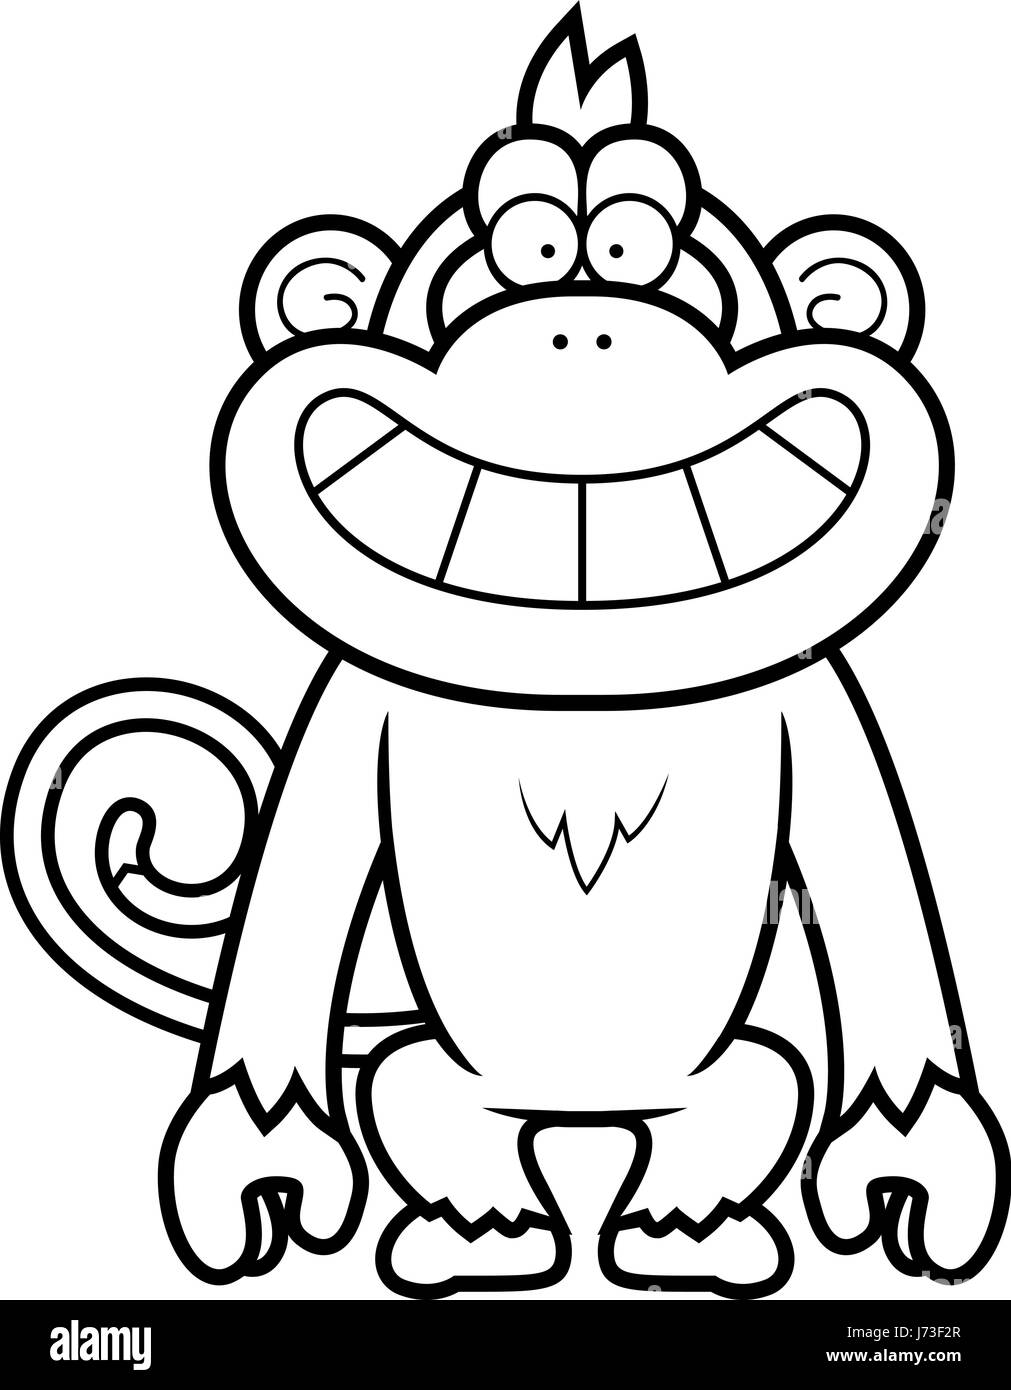 Eine Karikatur Illustration eines Affen grinsend. Stock Vektor